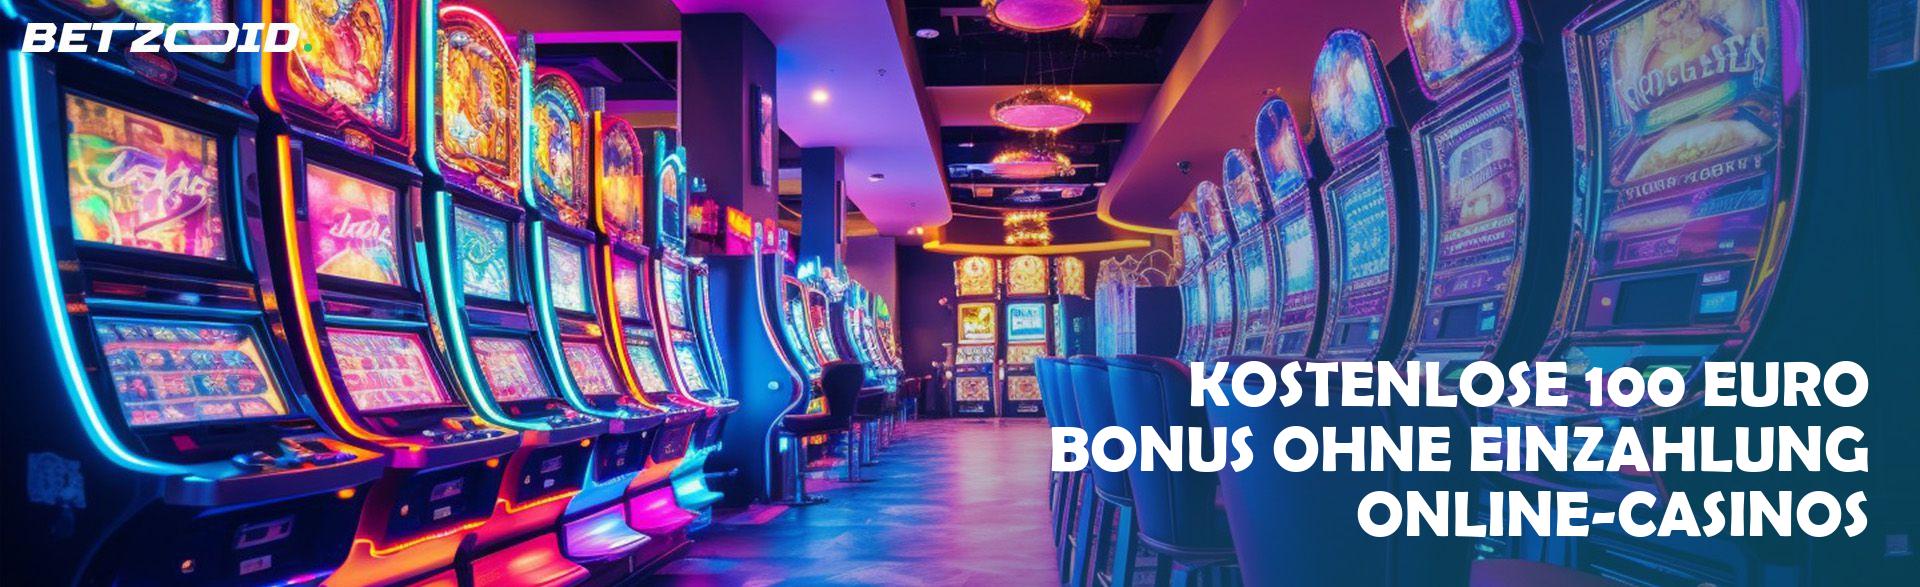 Kostenlose 100 Euro Bonus ohne Einzahlung Online-Casinos.